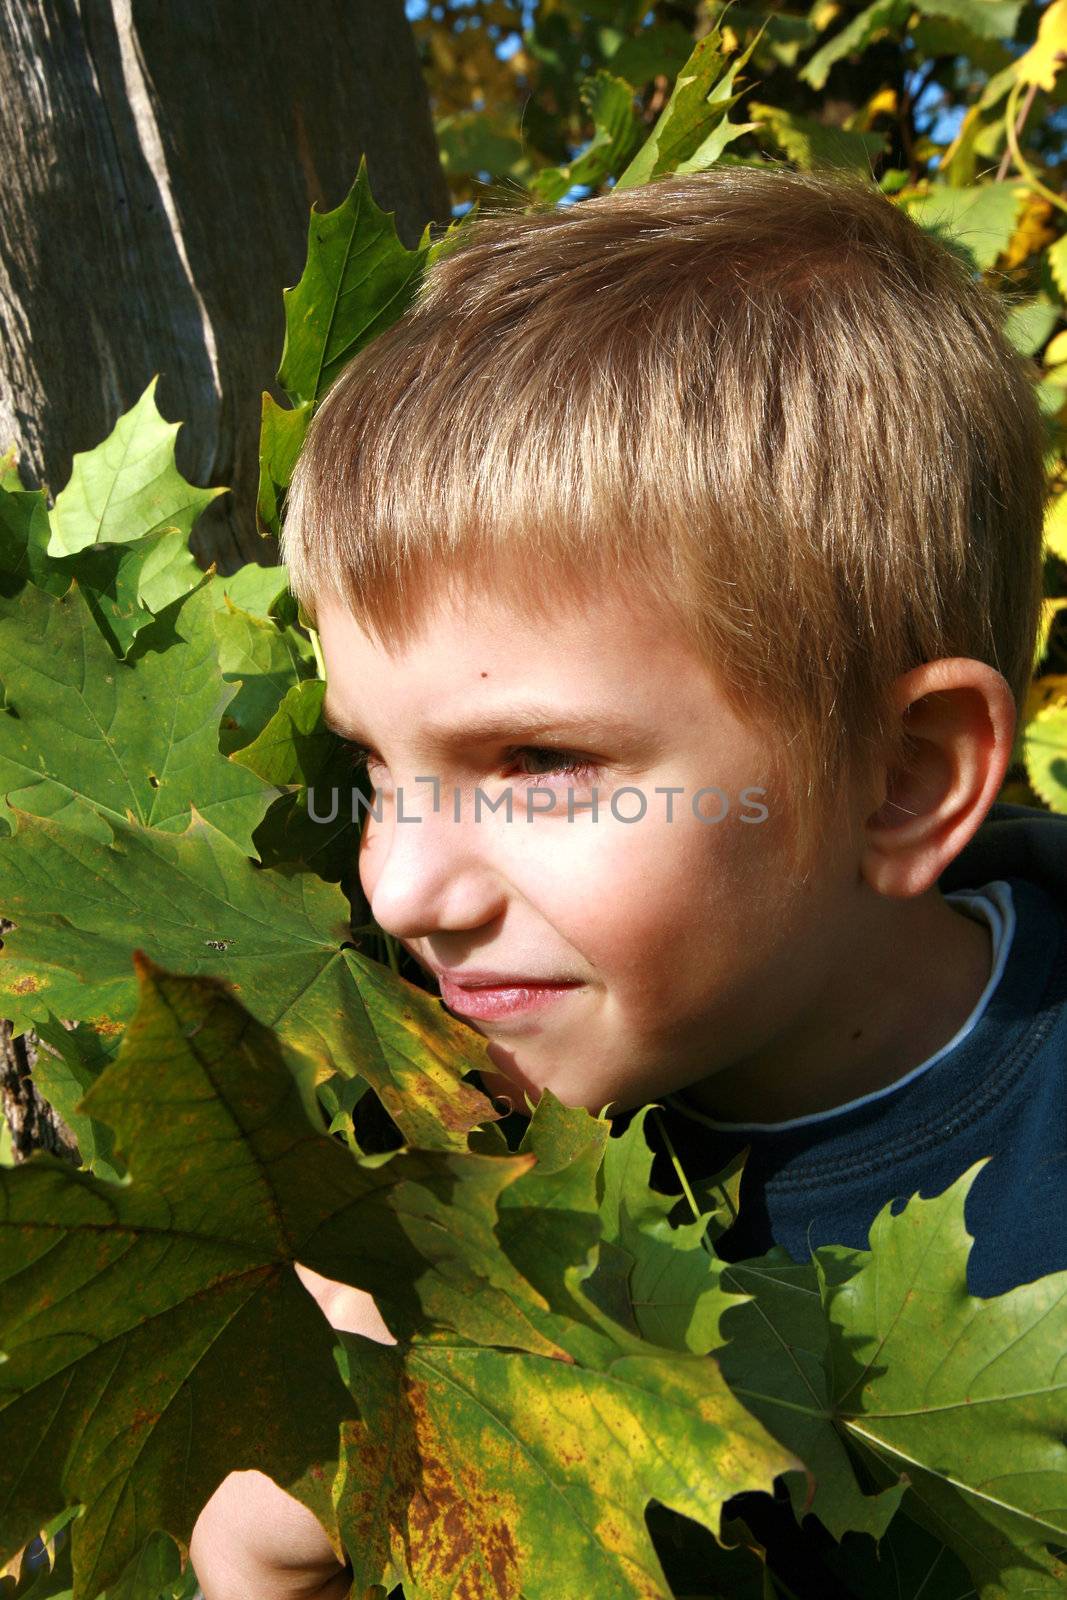 Autumn boy by fotokate